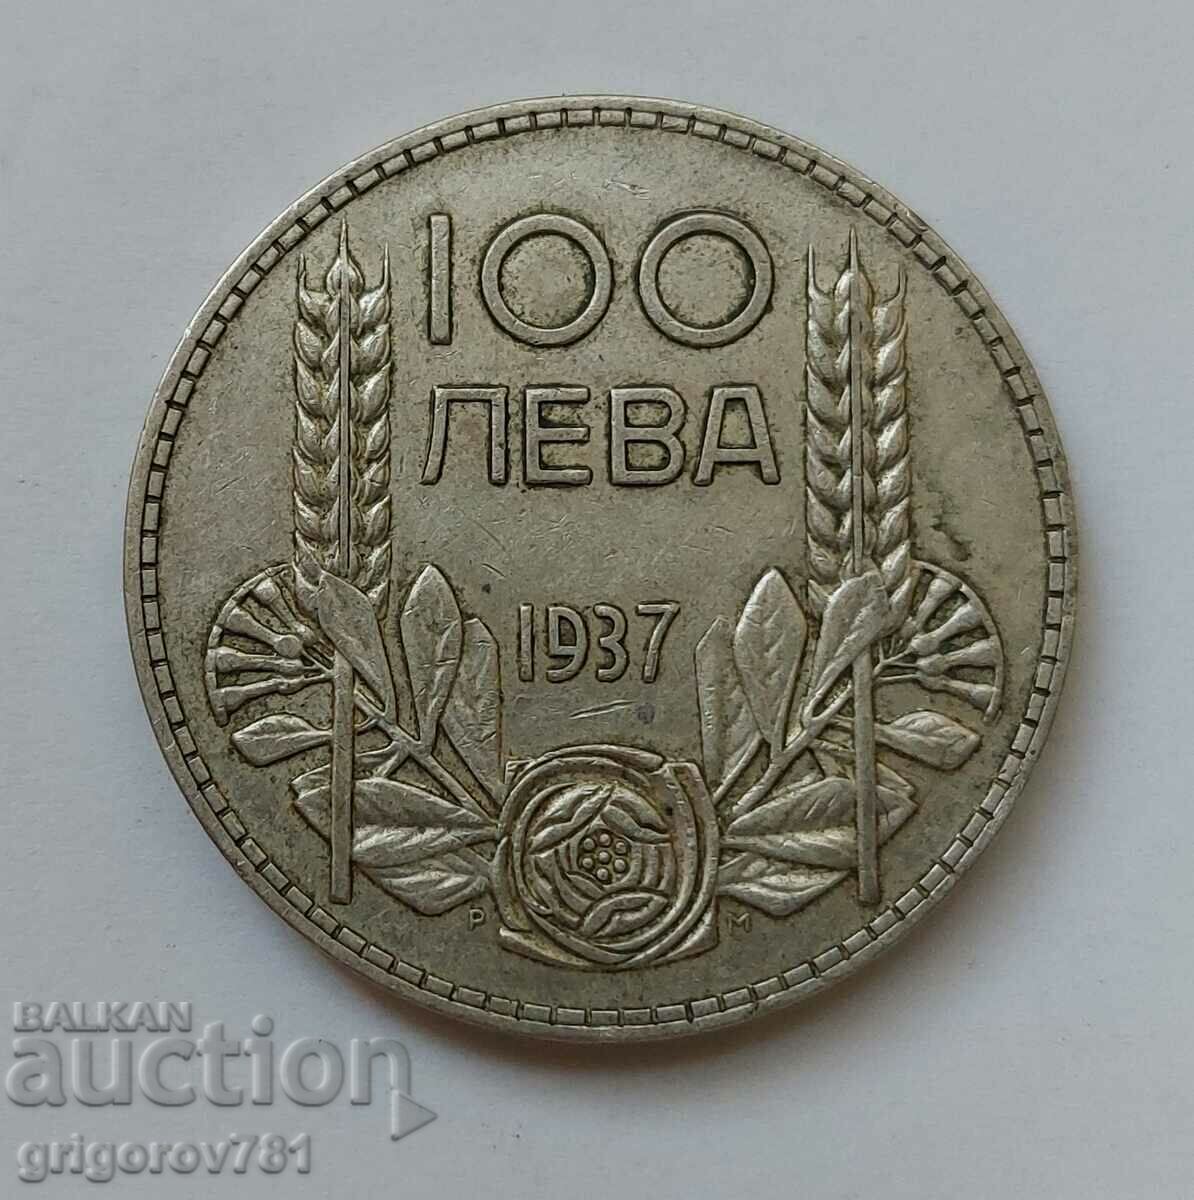 100 leva silver Bulgaria 1937 - silver coin #115